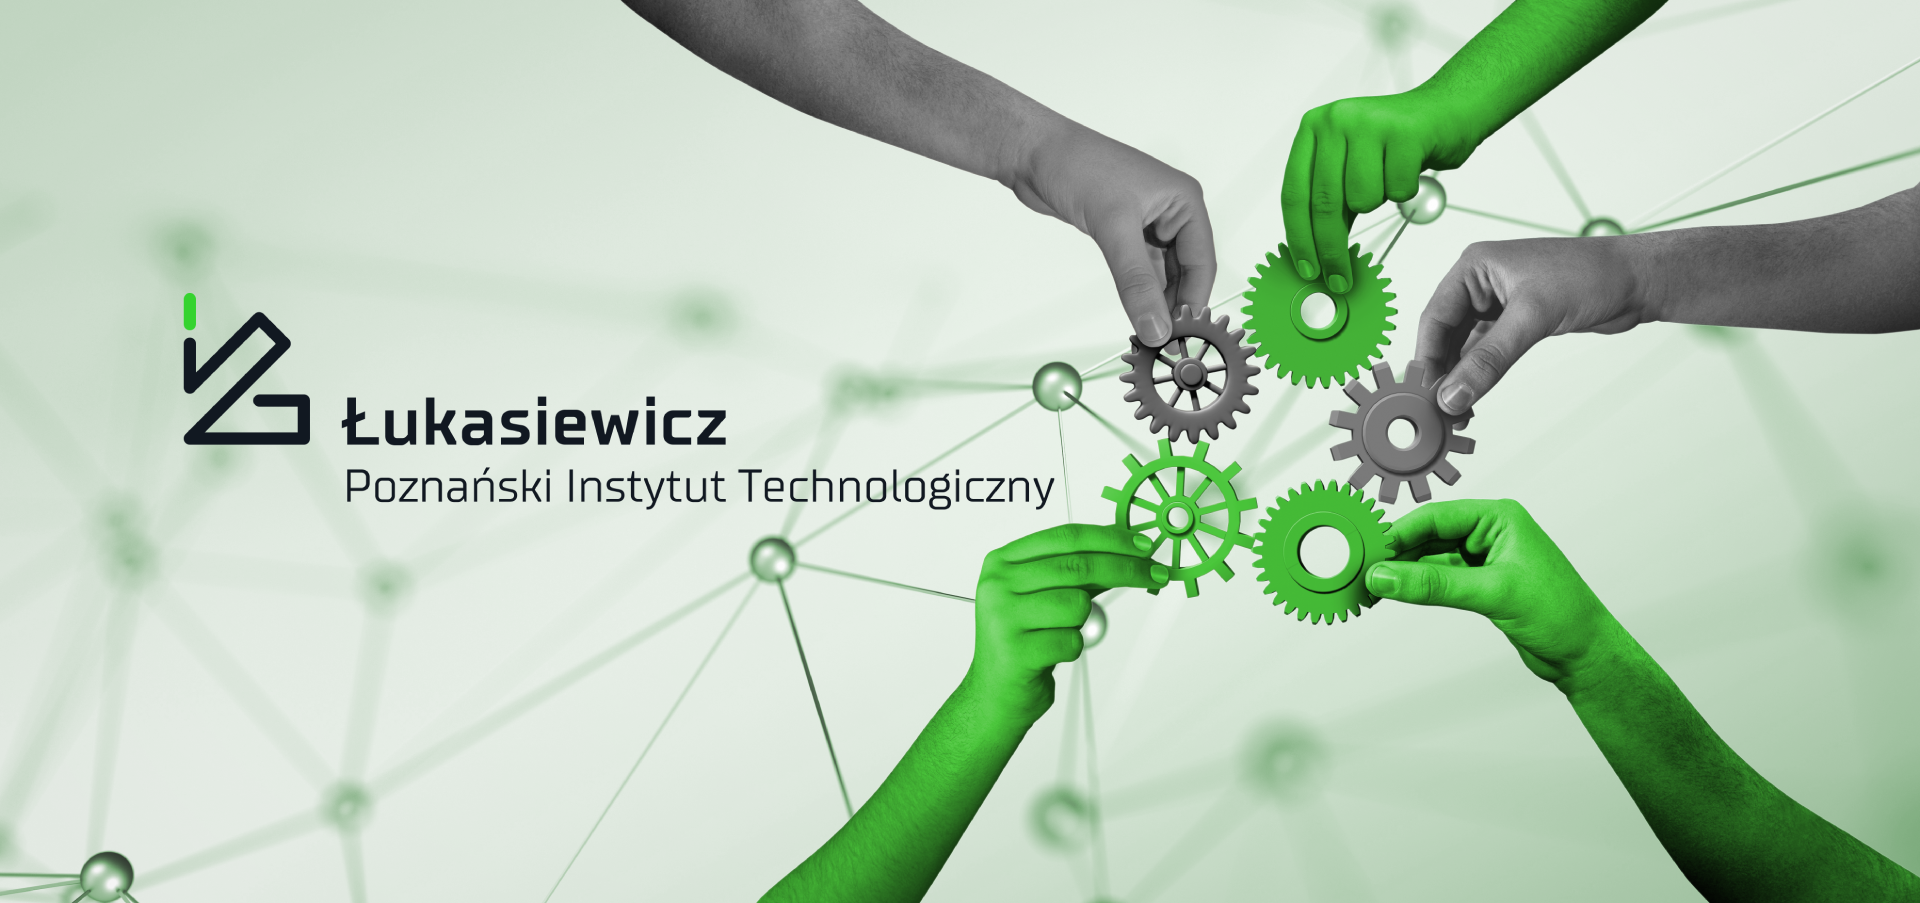 Baner Łukasiewicz - Poznański Instytut Technologiczny